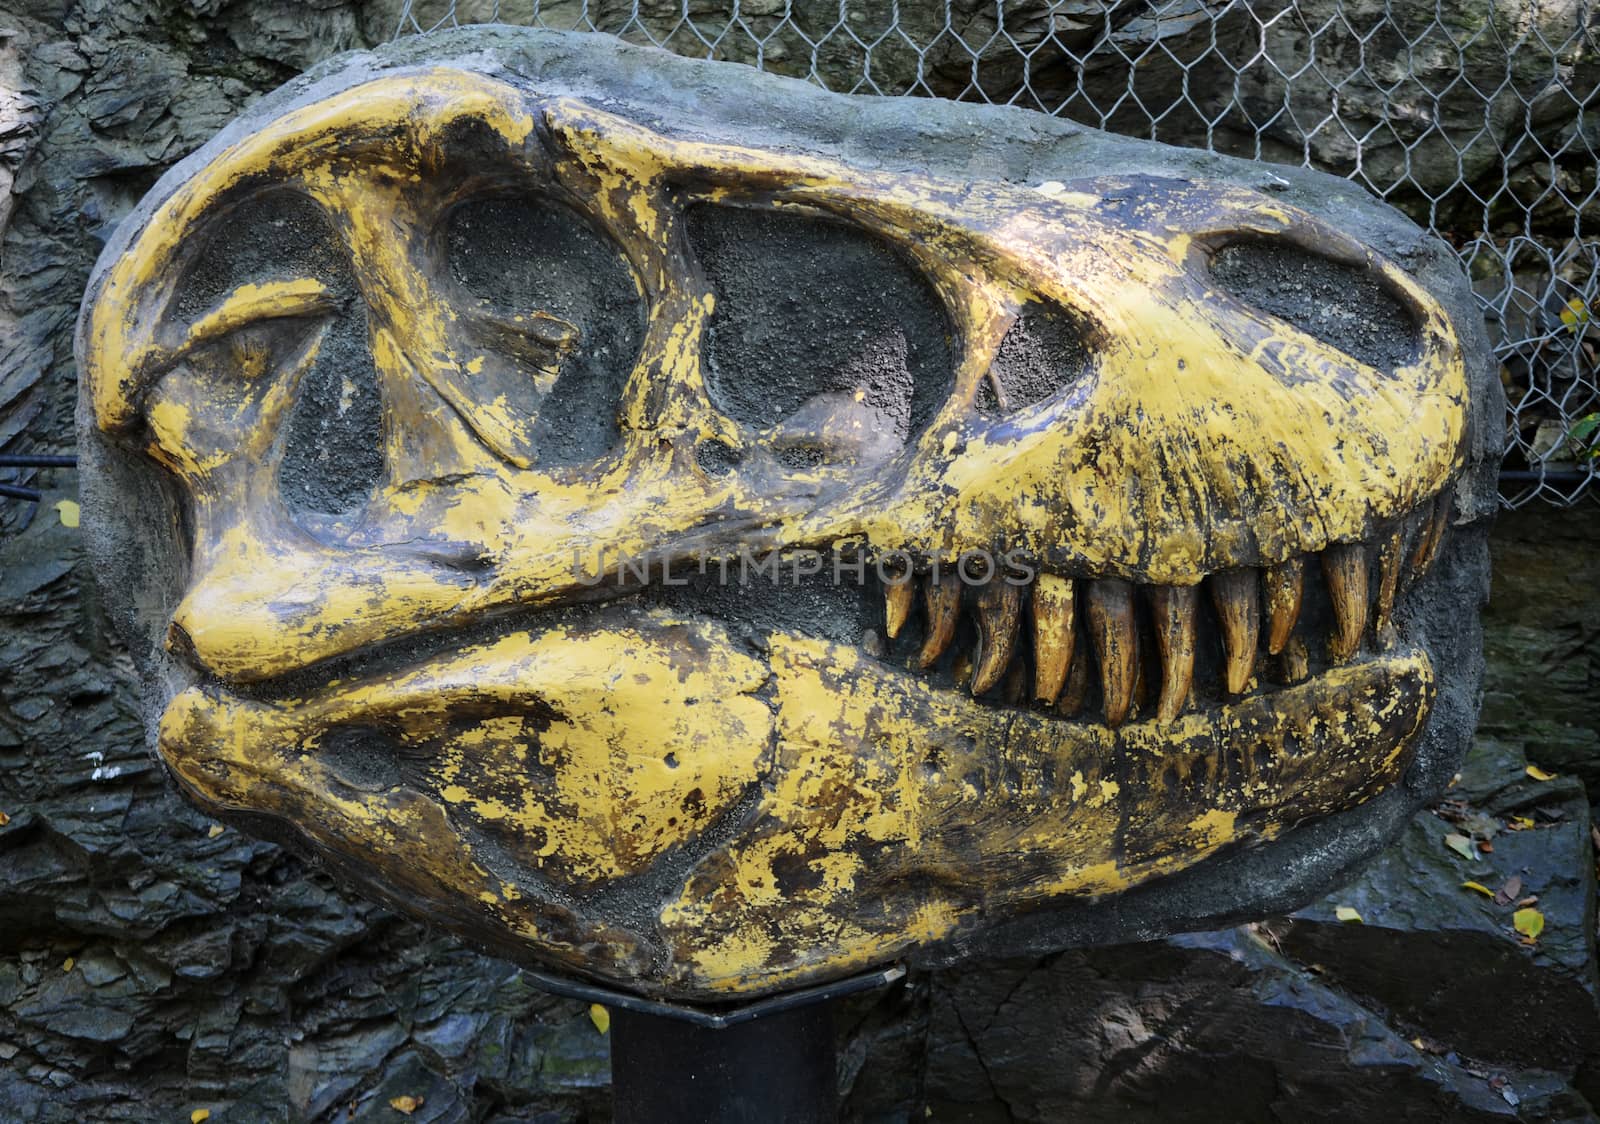 tyrannosaurus rex fossil by sarkao